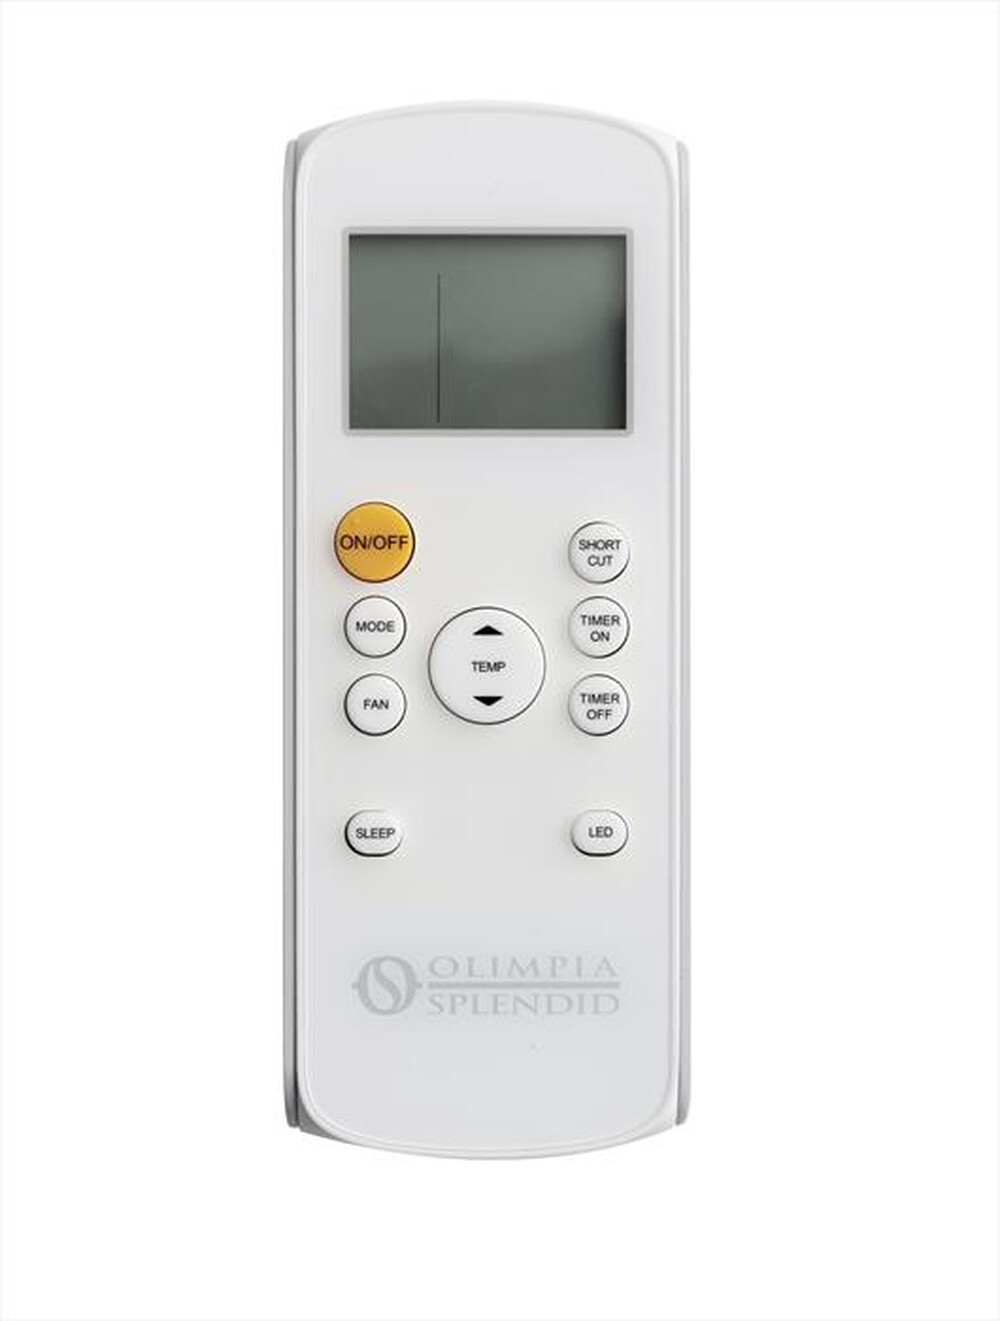 "OLIMPIA SPLENDID - DOLCECLIMA COMPACT 8 P Condizionatore portatile-Bianco"